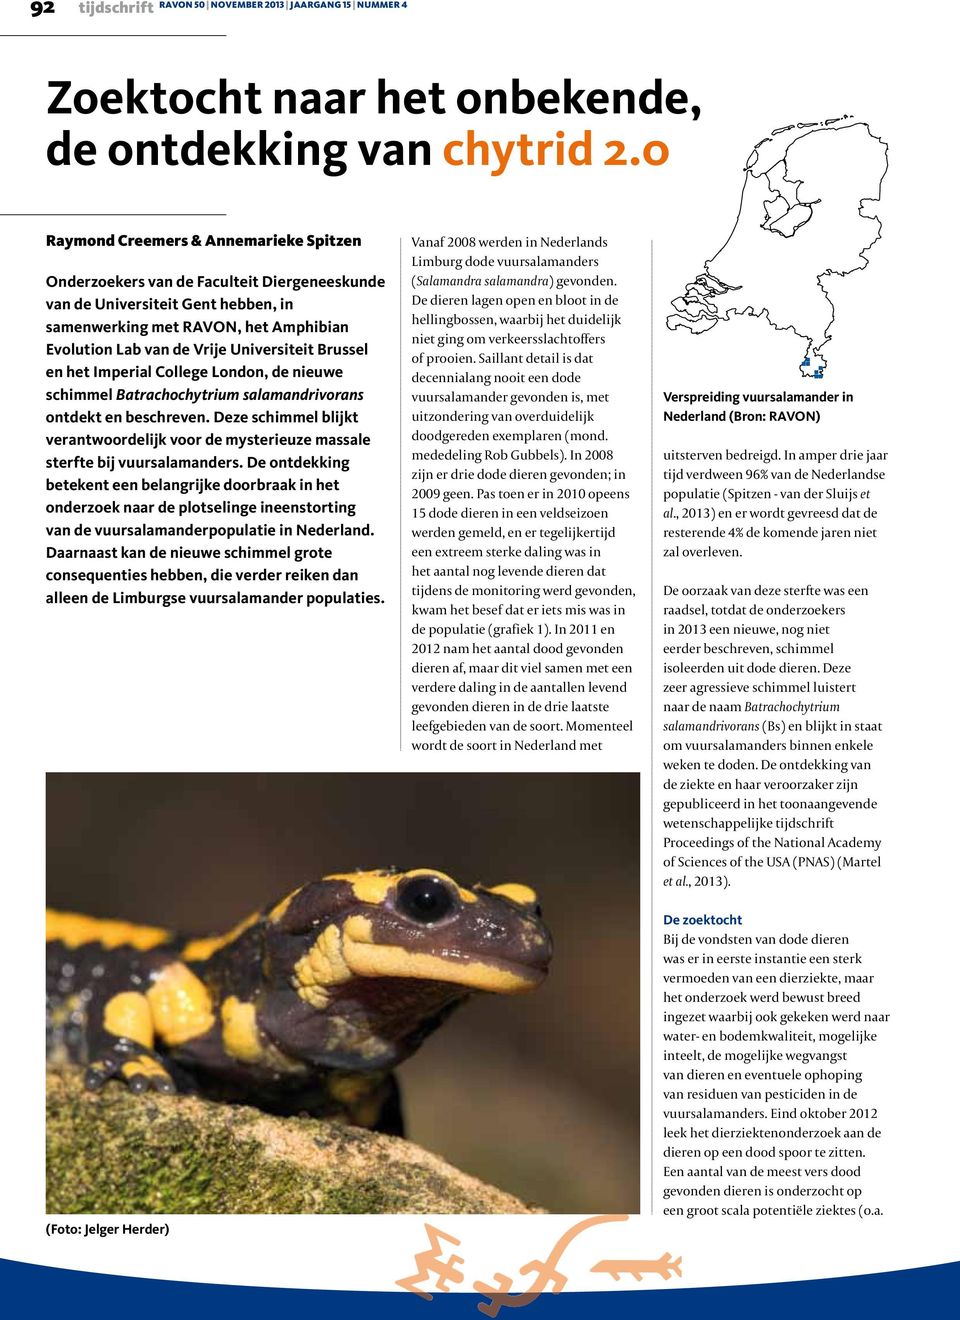 Universiteit Brussel en het Imperial College London, de nieuwe schimmel Batrachochytrium salamandrivorans ontdekt en beschreven.